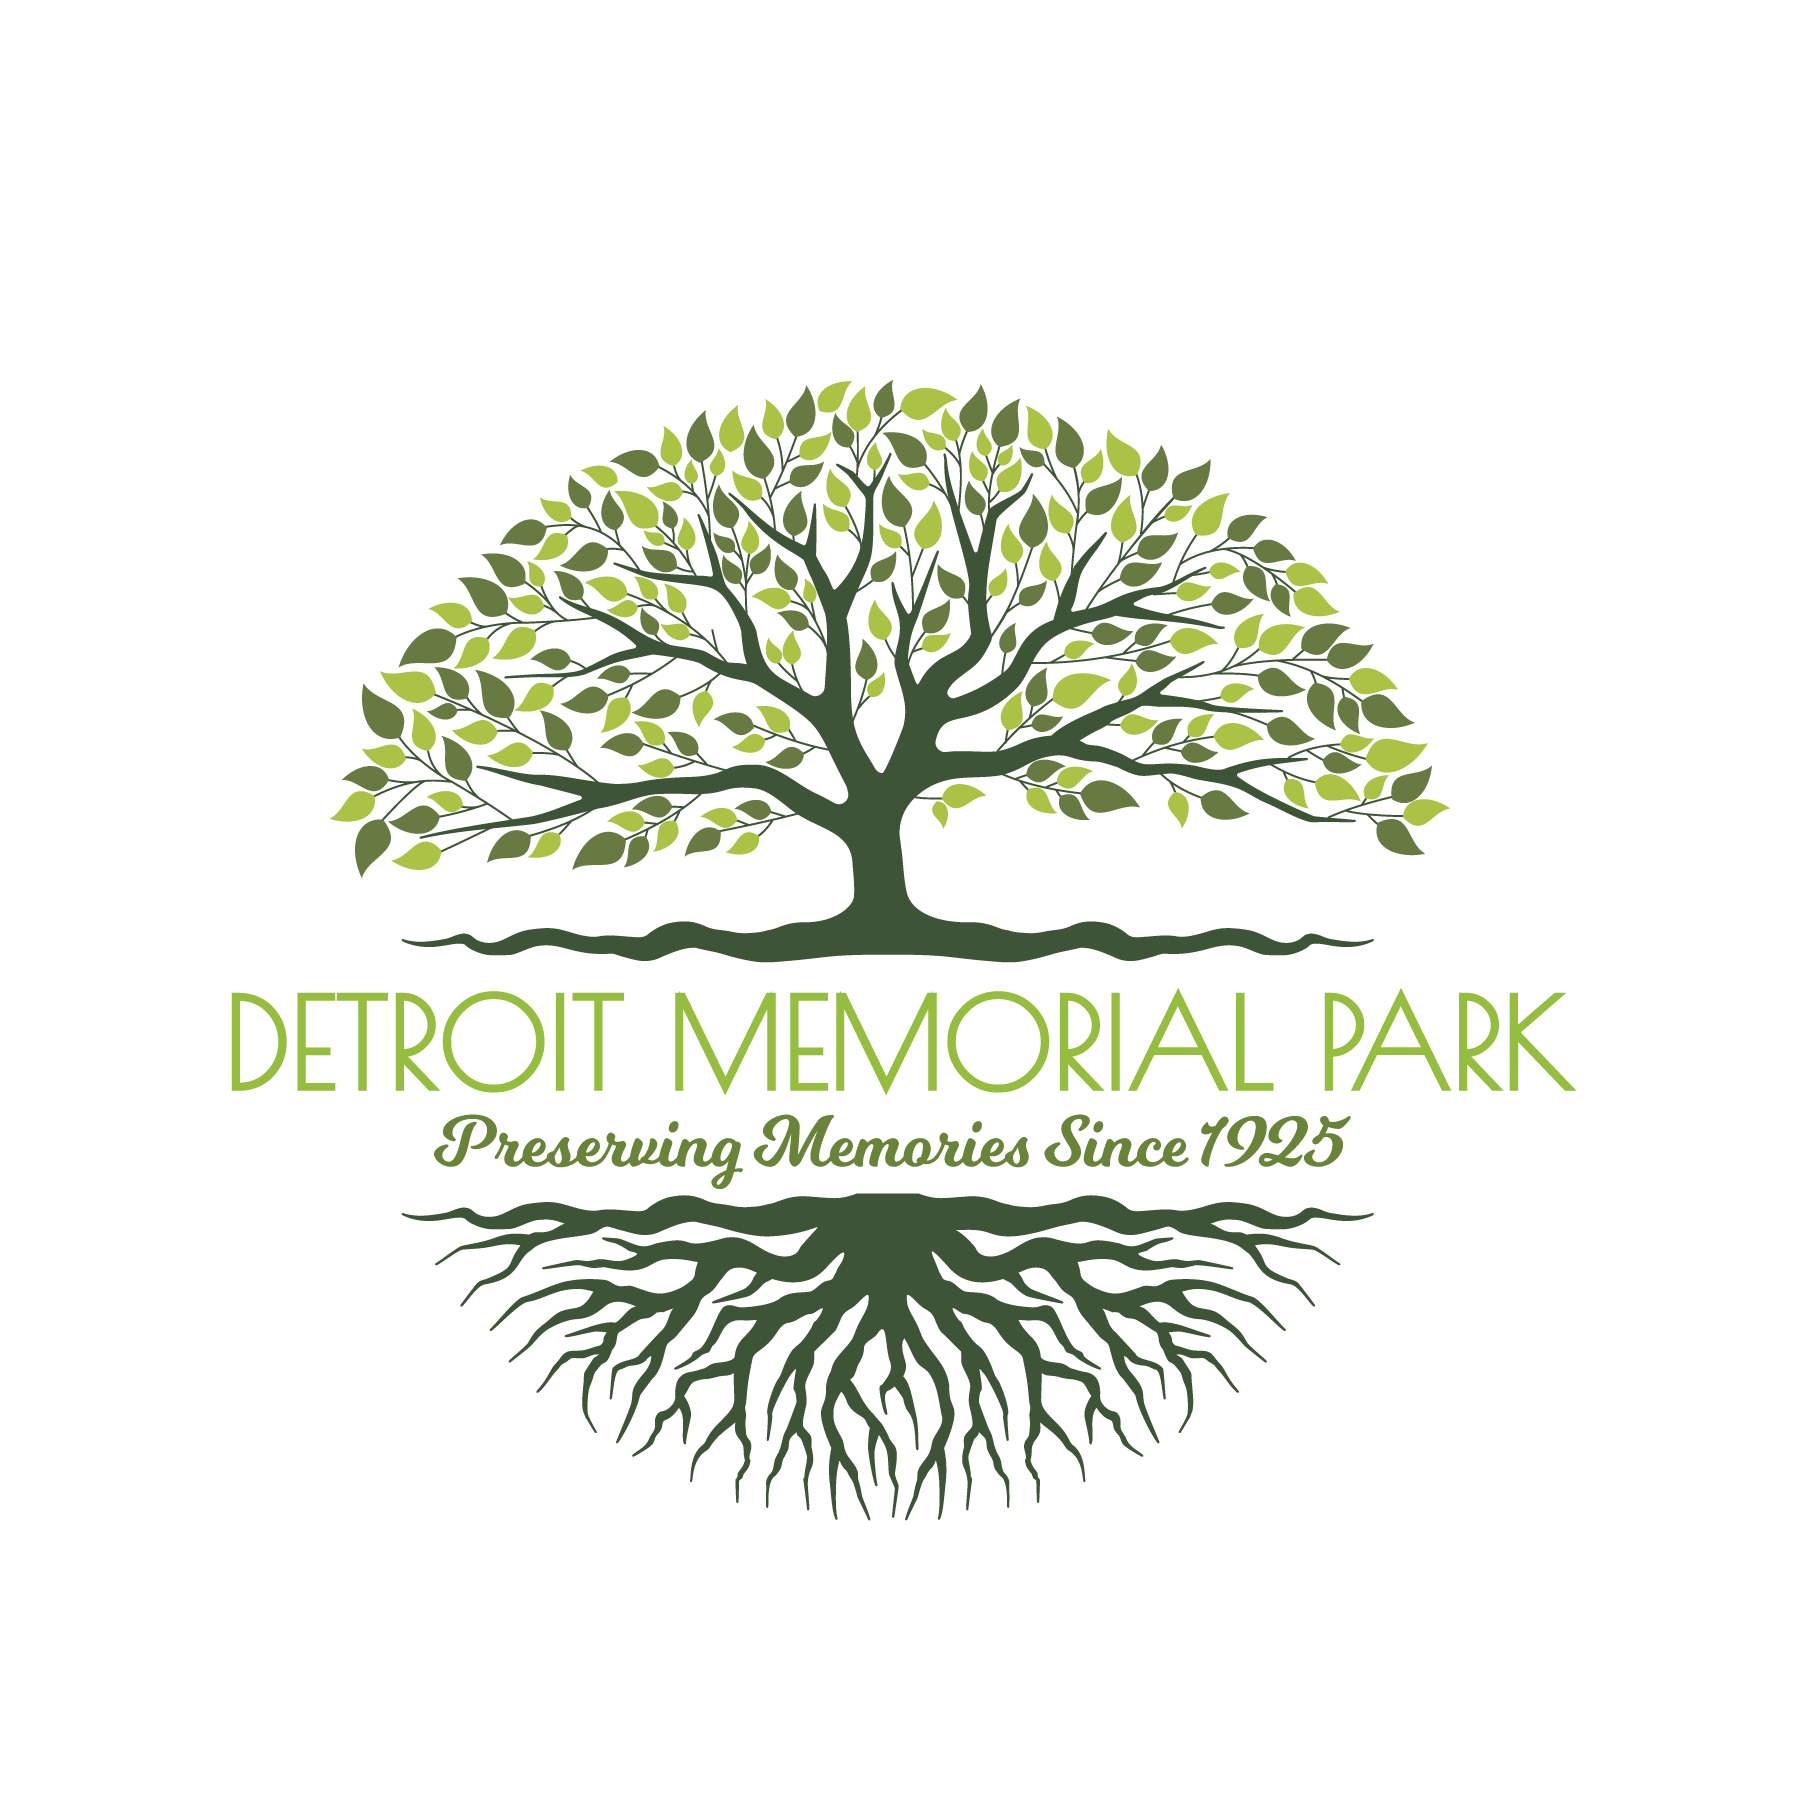 Detroit Memorial Park Association